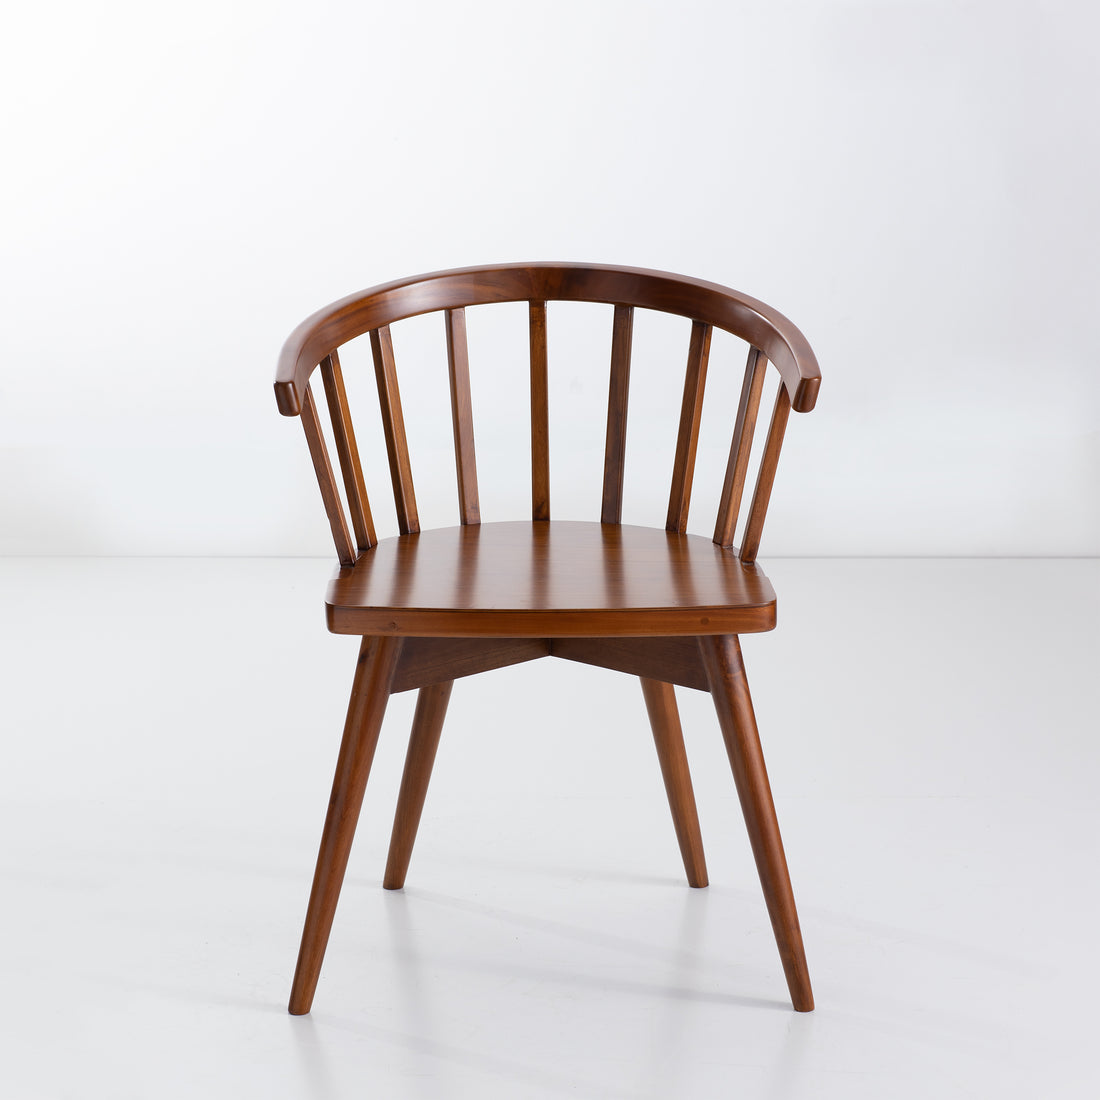 Wooden Chair (কাঠের চেয়ার)